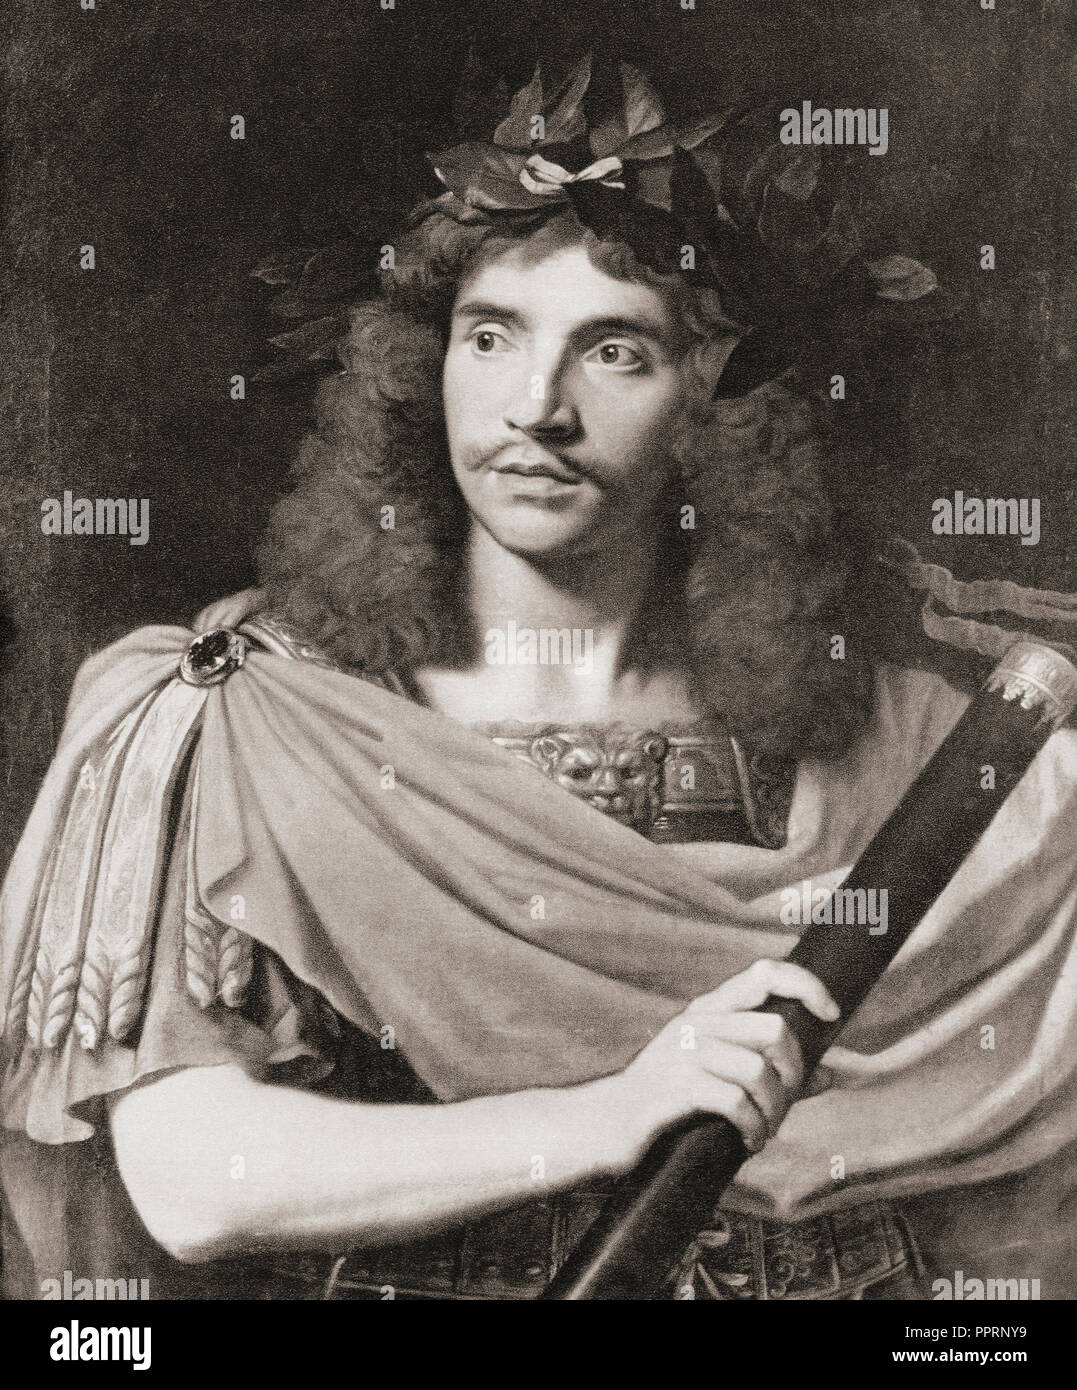 Jean-Baptiste Poquelin, connu sous son nom de scène, Molière, 1622 - 1673. Dramaturge français, acteur et poète. Banque D'Images